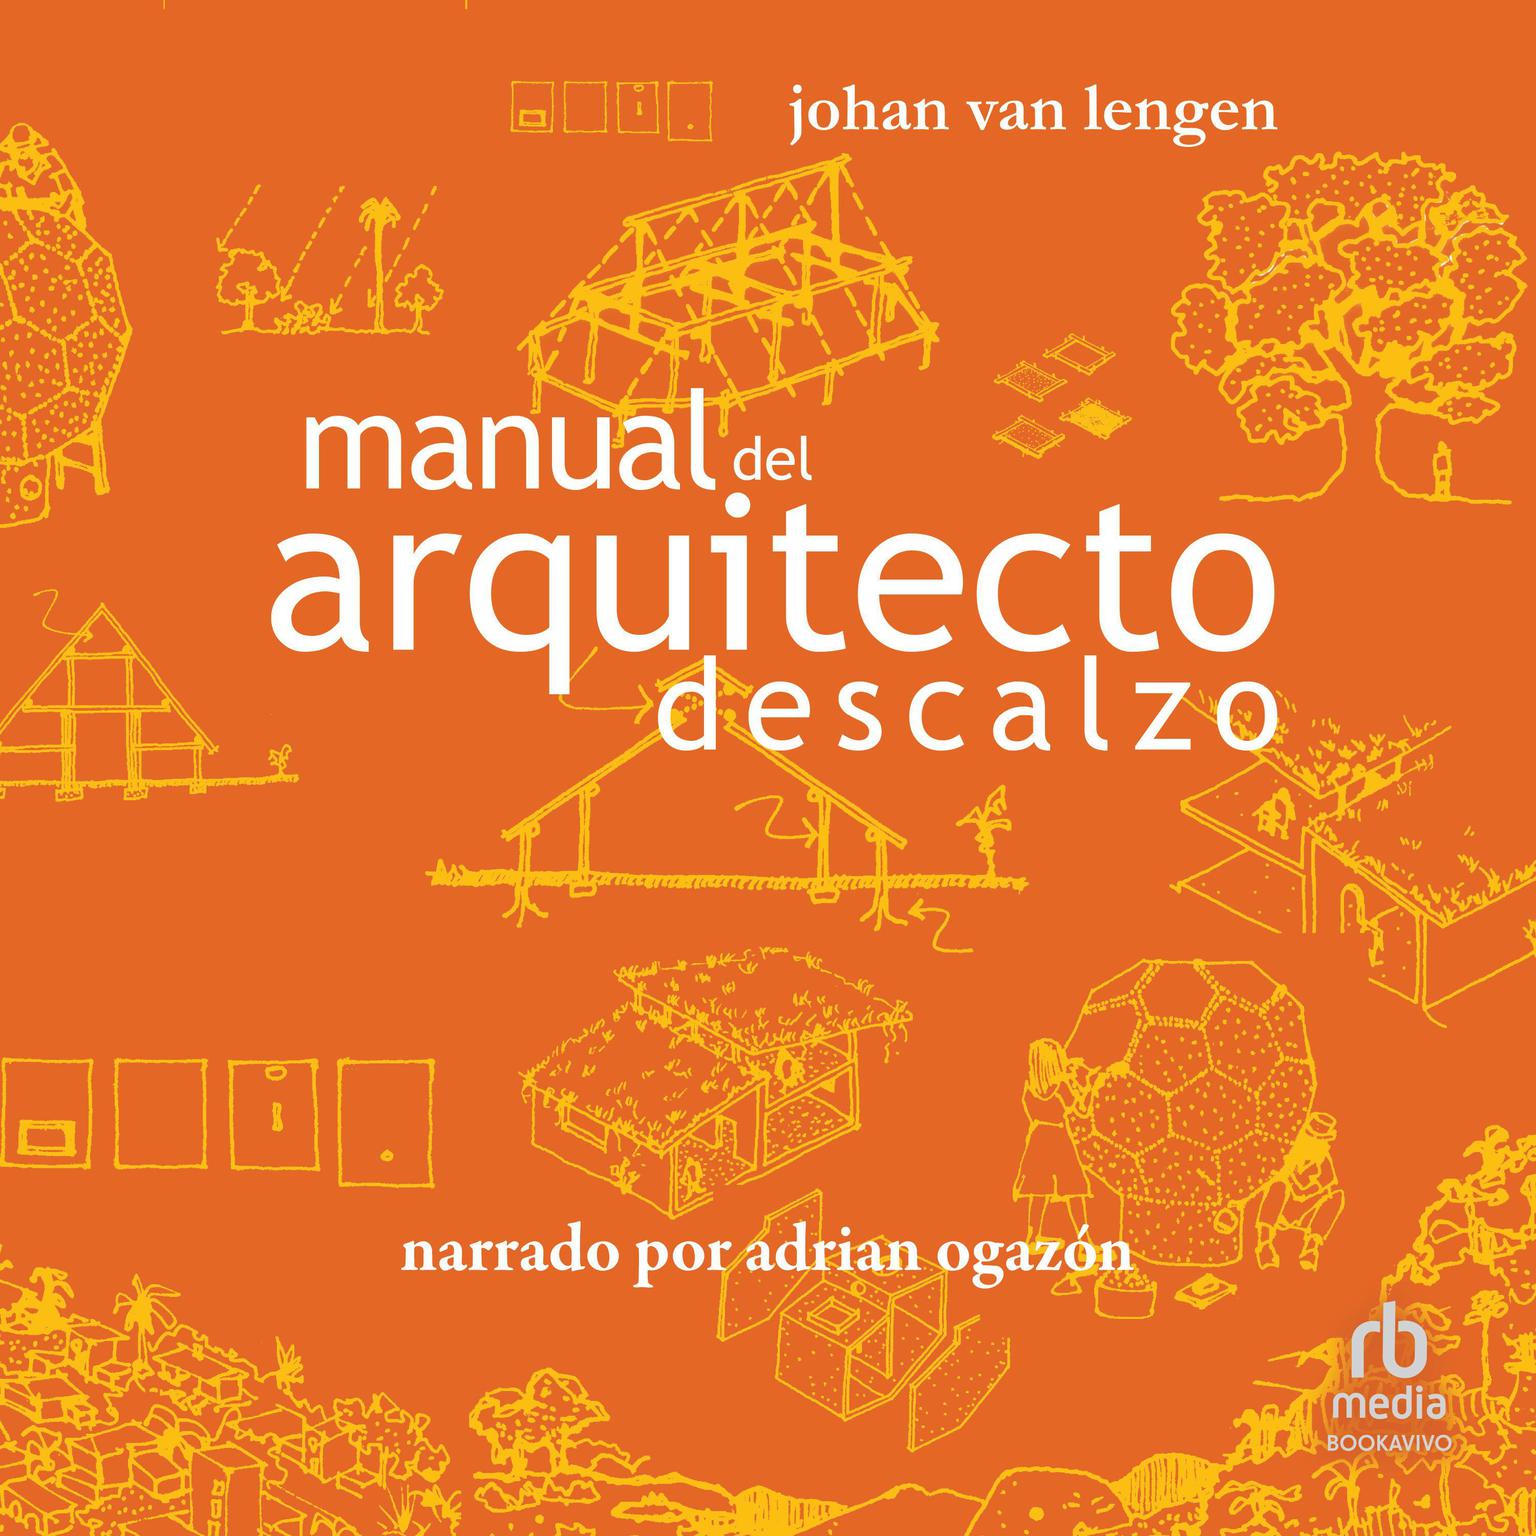 Manual del arquitecto descalzo: Un manual para la construcción ecológica (A Handbook for Green Building) Audiobook, by Johan van Lengen